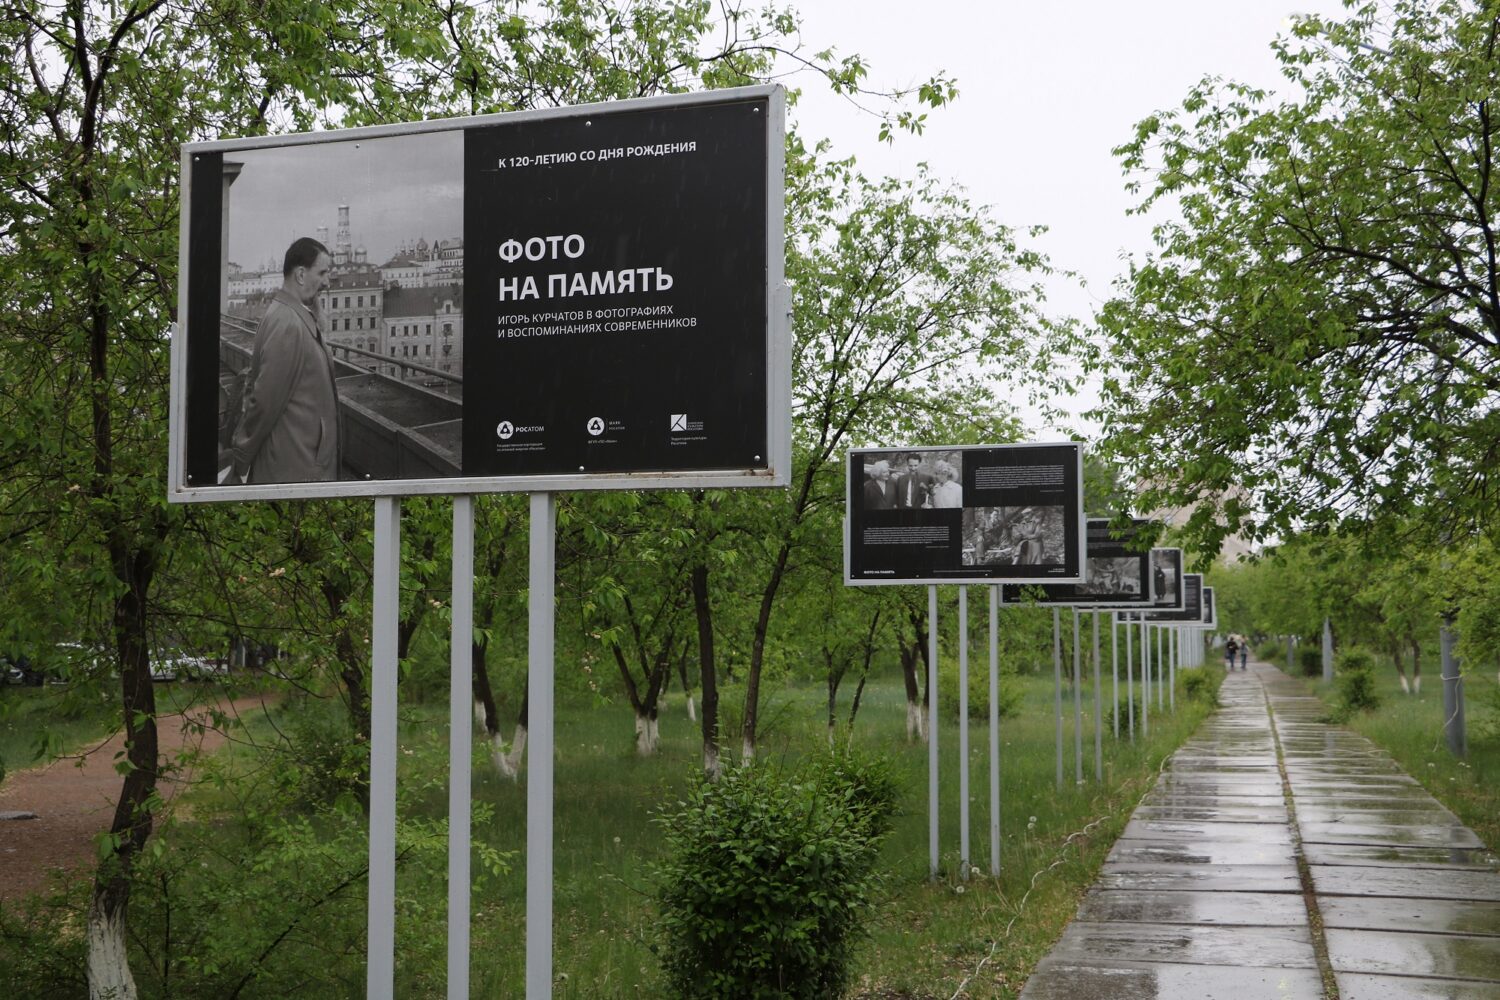 Торжественное открытие фотовыставки «Фото на память. Игорь Курчатов в фотографиях и воспоминаниях современников» прошло в Краснокаменске